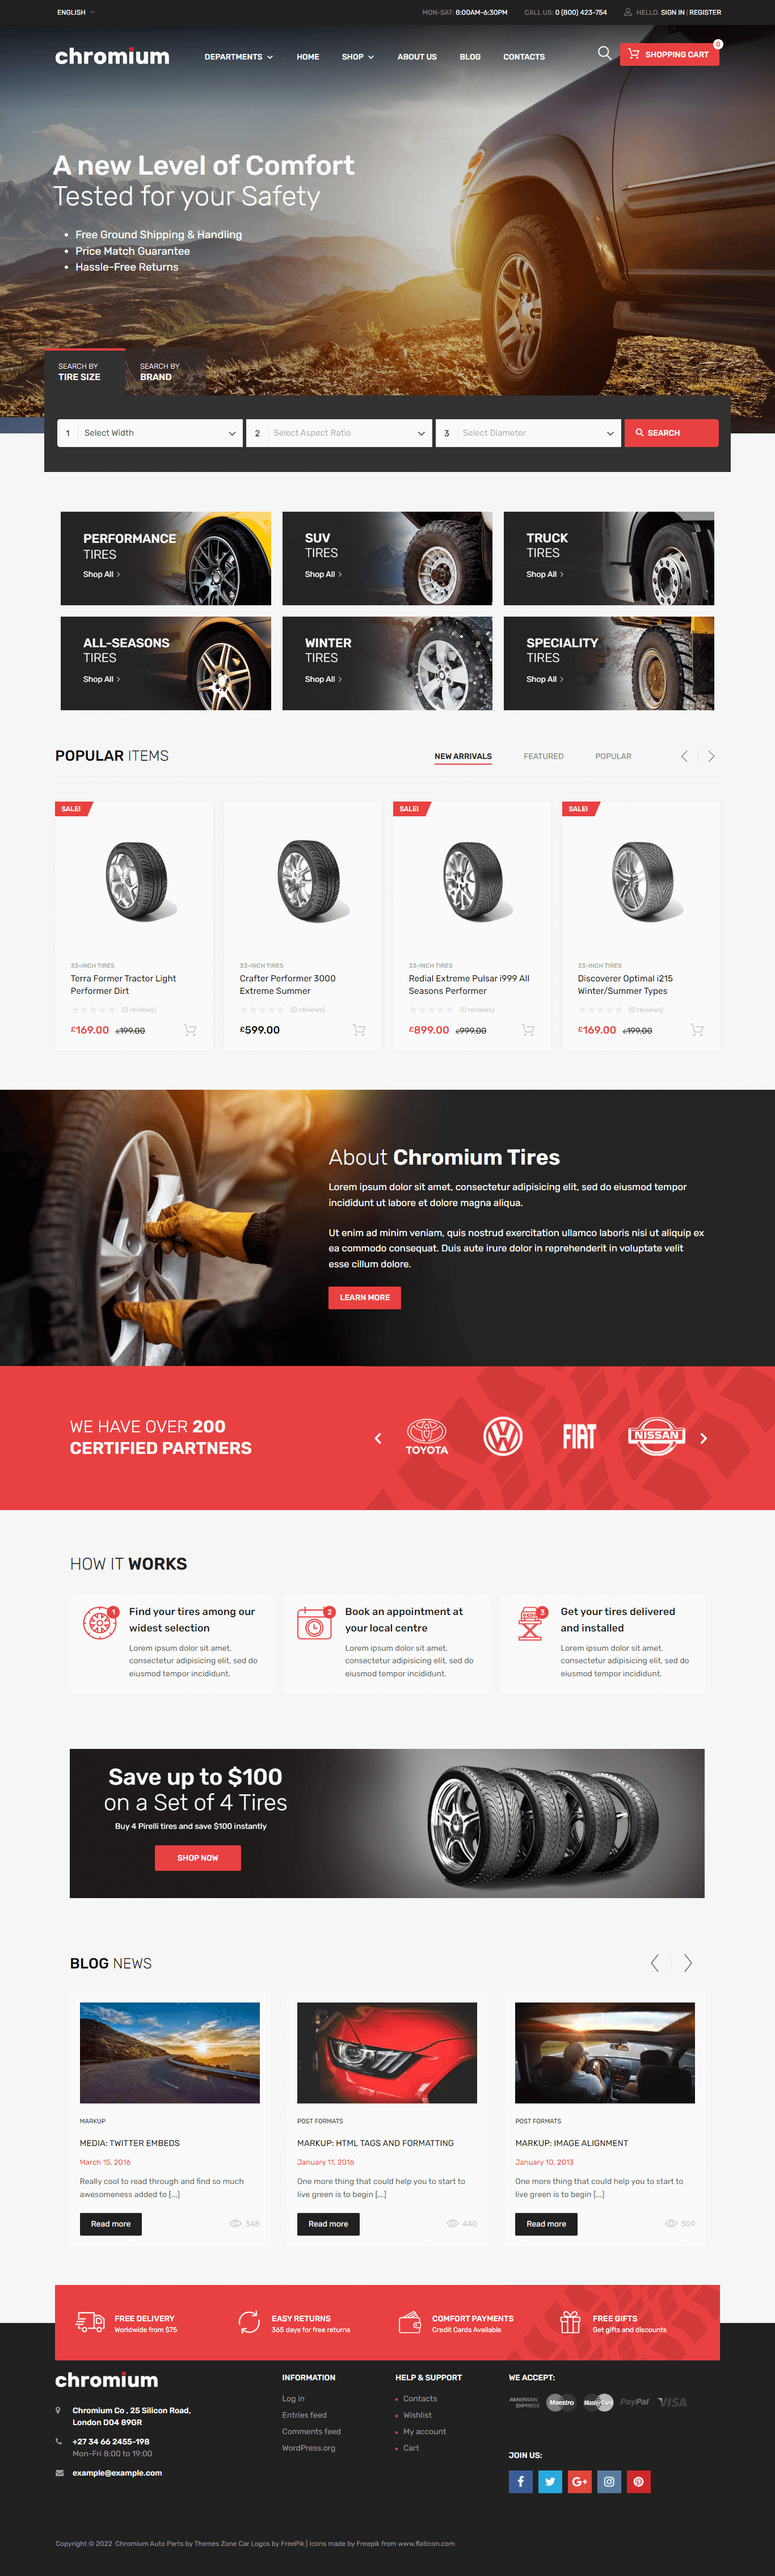 chromium tires shop